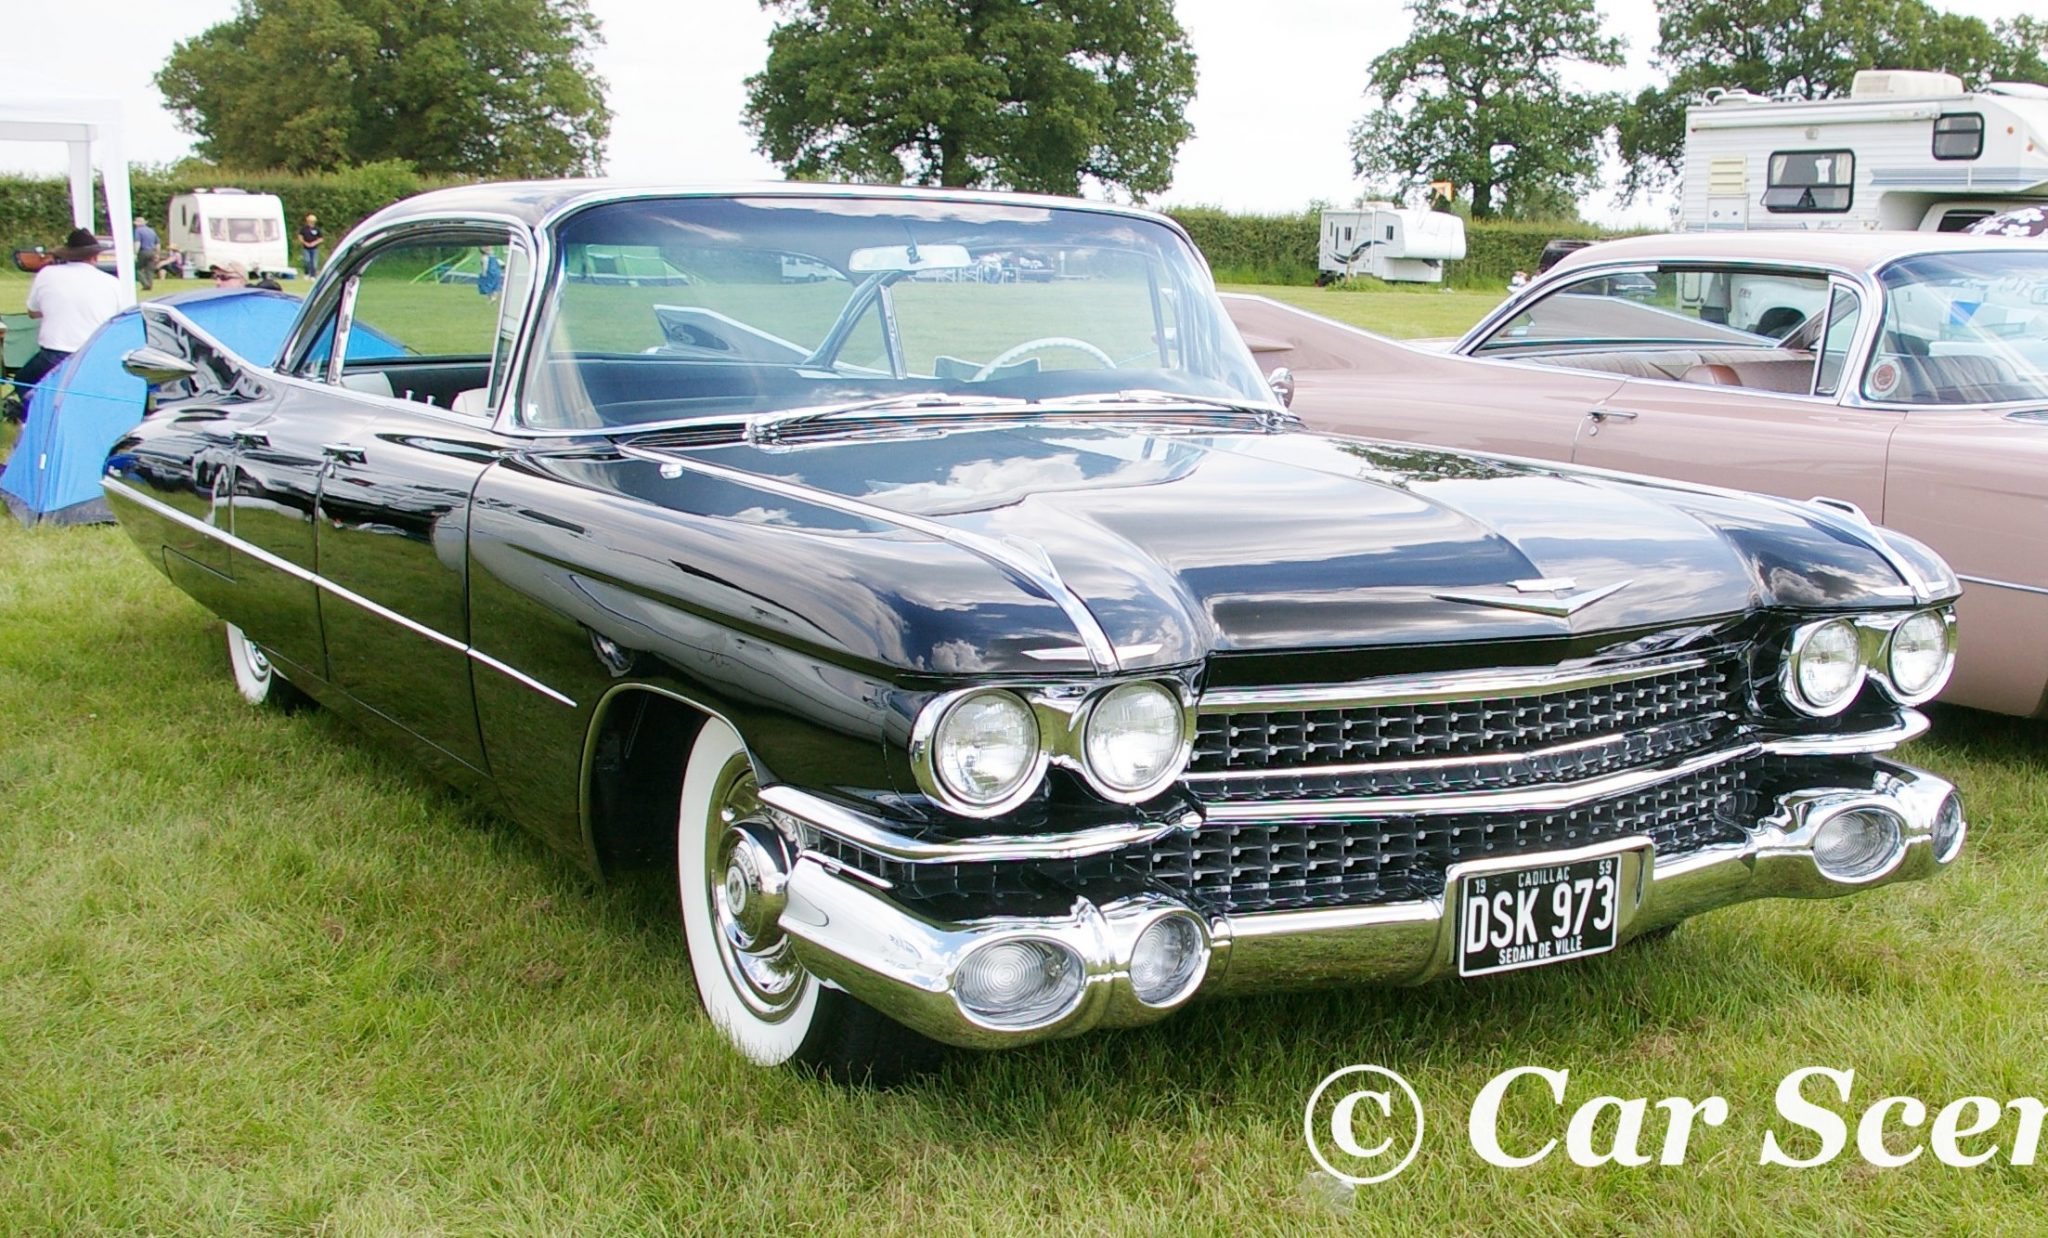 1959 Cadillac Sedan de Ville Coupe front three quarters view